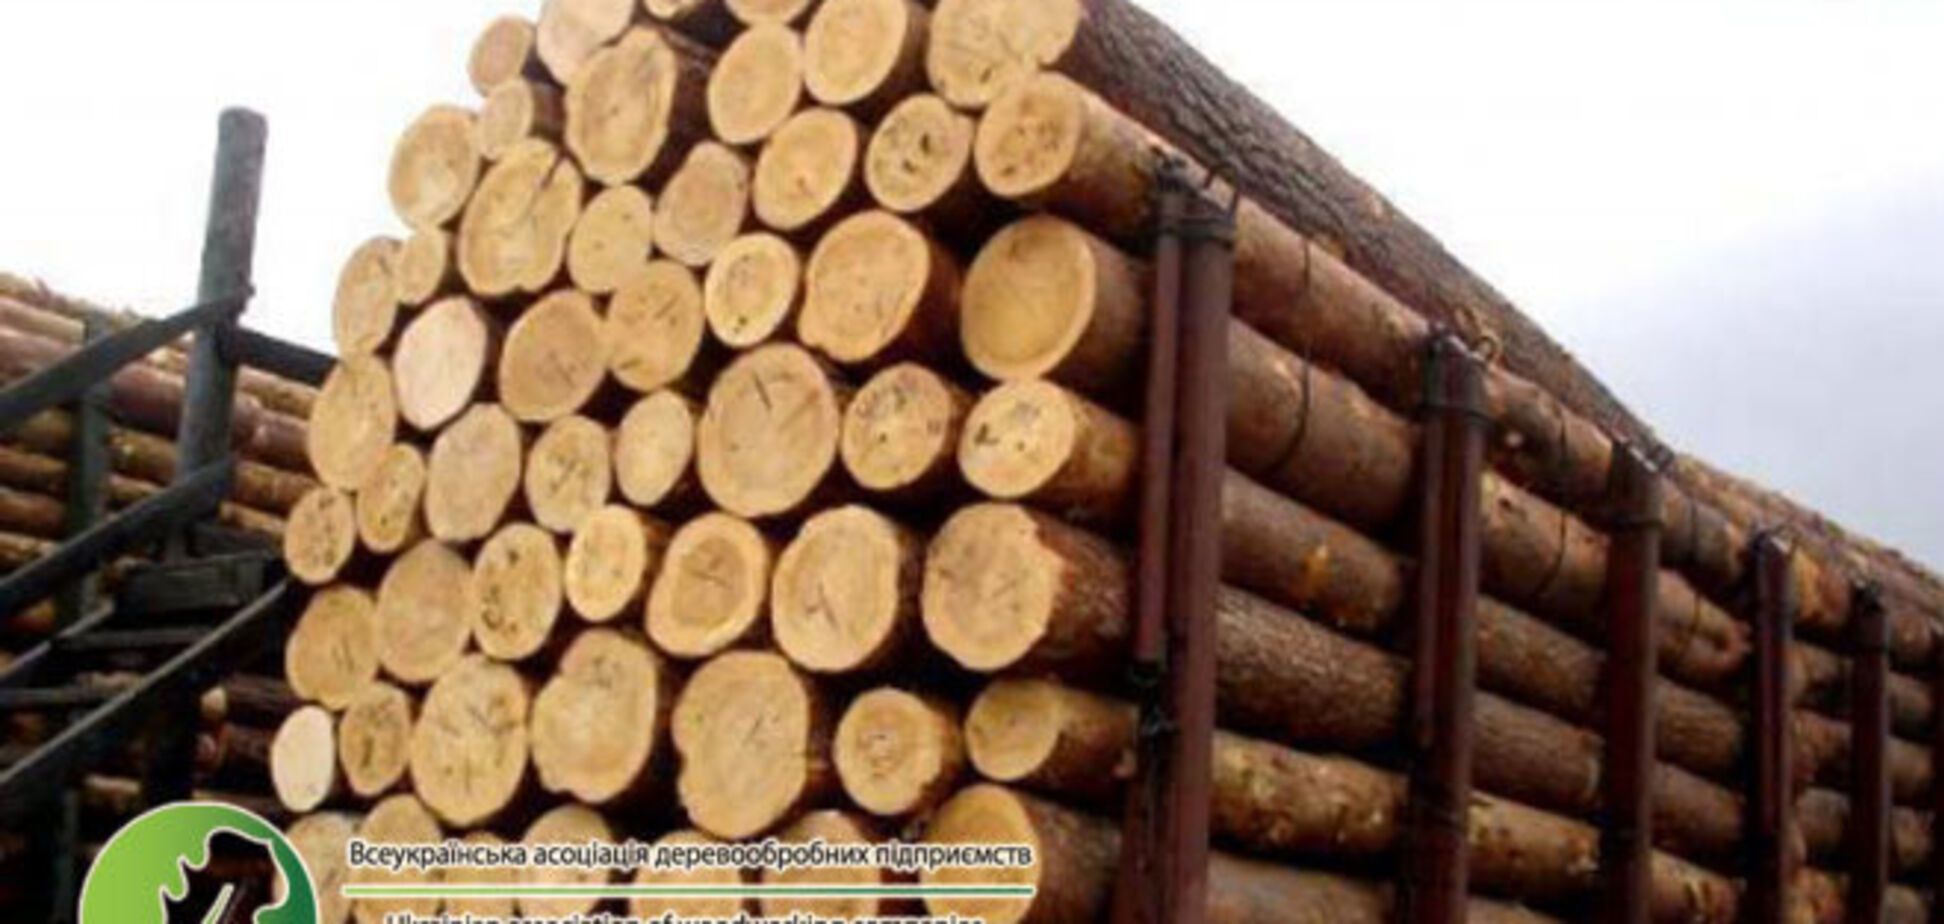 Ассоциация деревообрабатывающих предприятий обвиняет Гослесагентство в антигосударственной политике